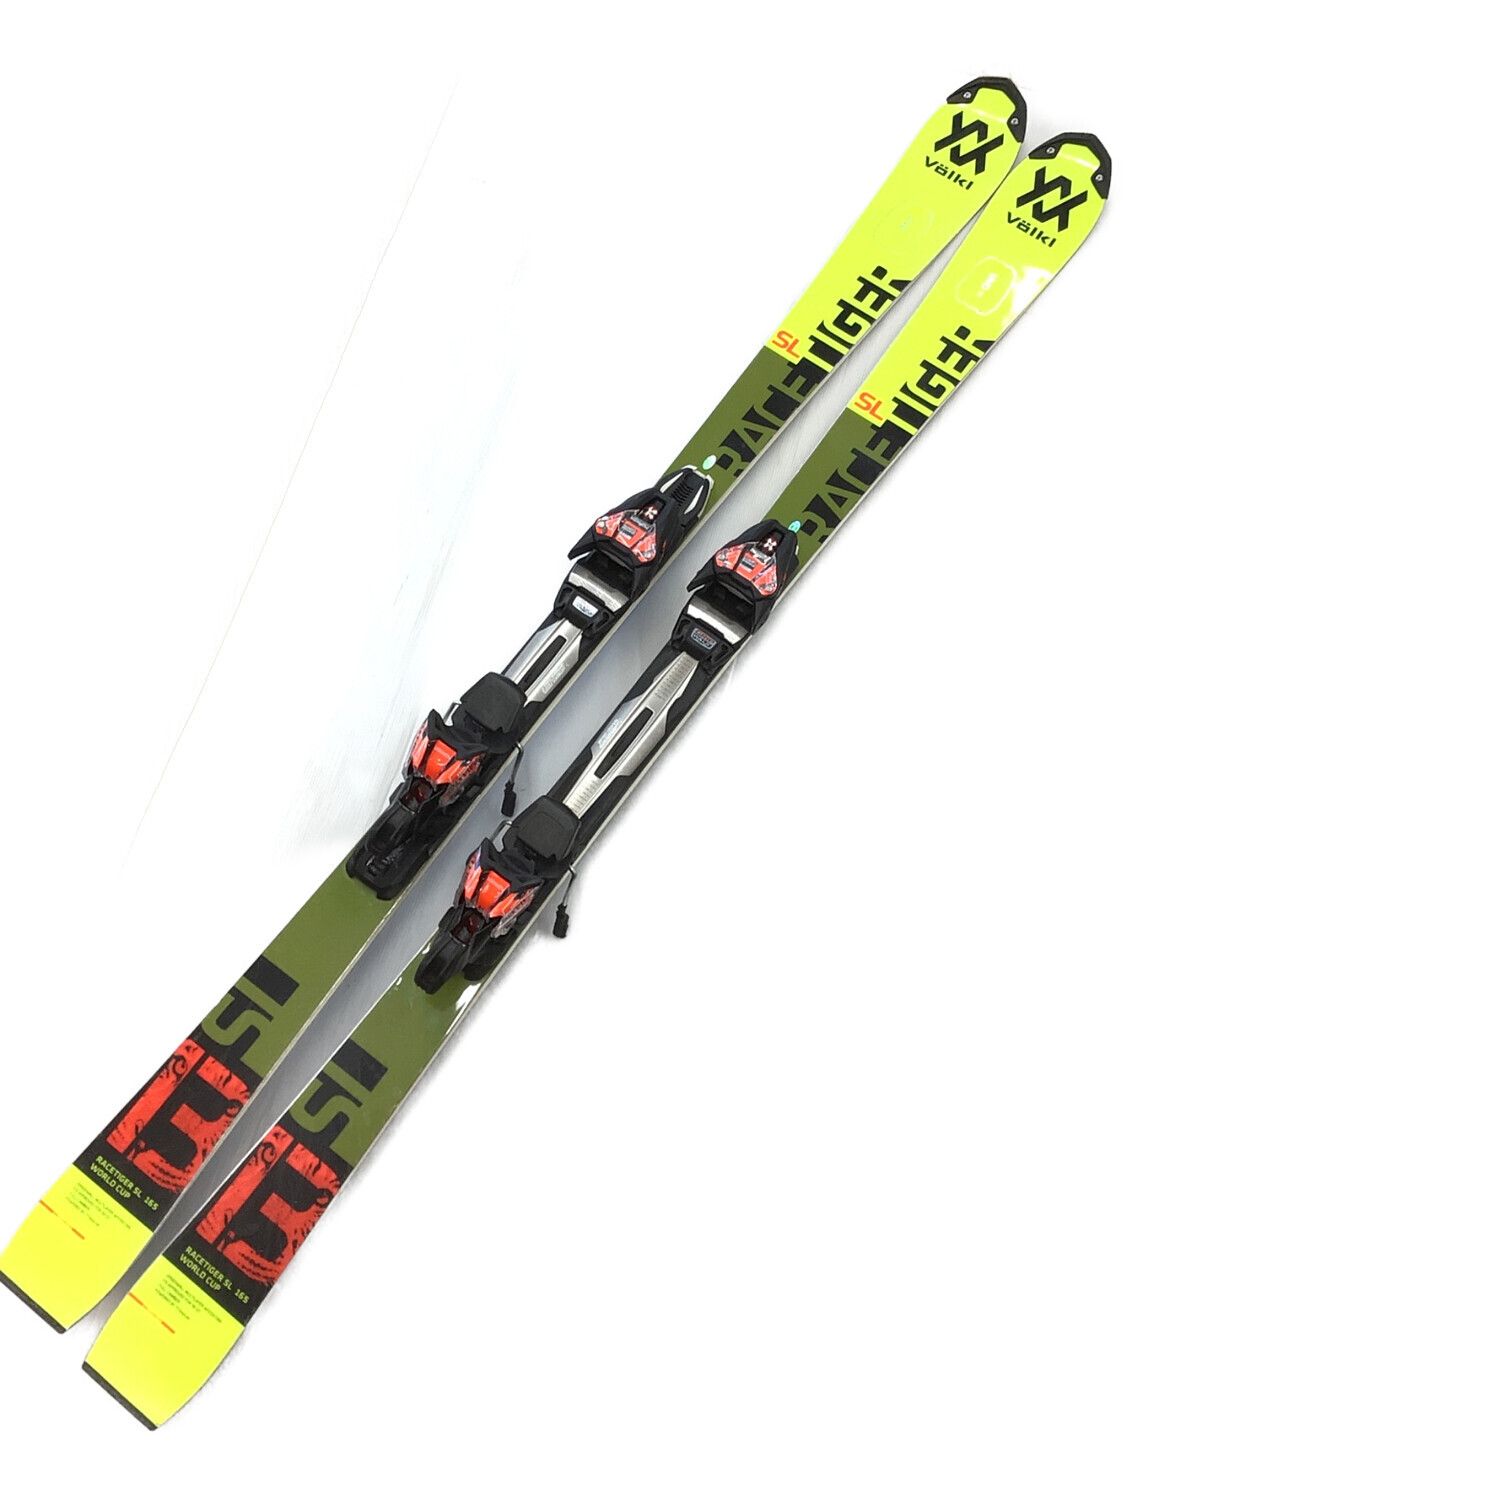 volkl フォルクル タイガーシャーク 168cm - スキー